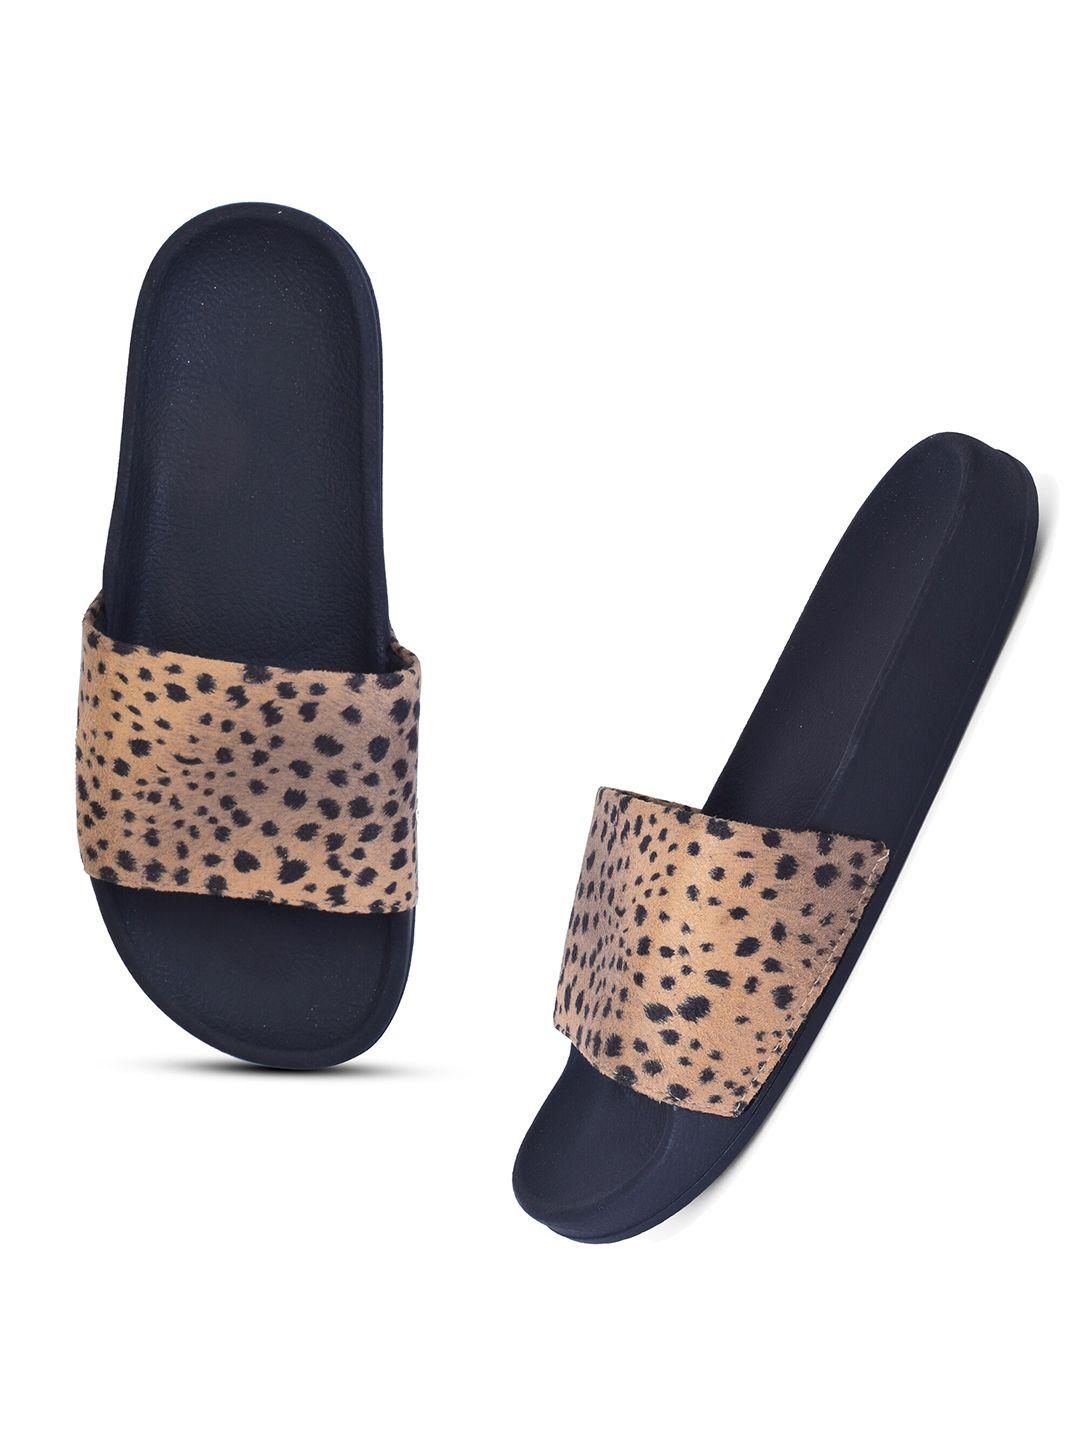 xe-looks-women-beige-comfortable-leopard-printed-flip-flops-sliders